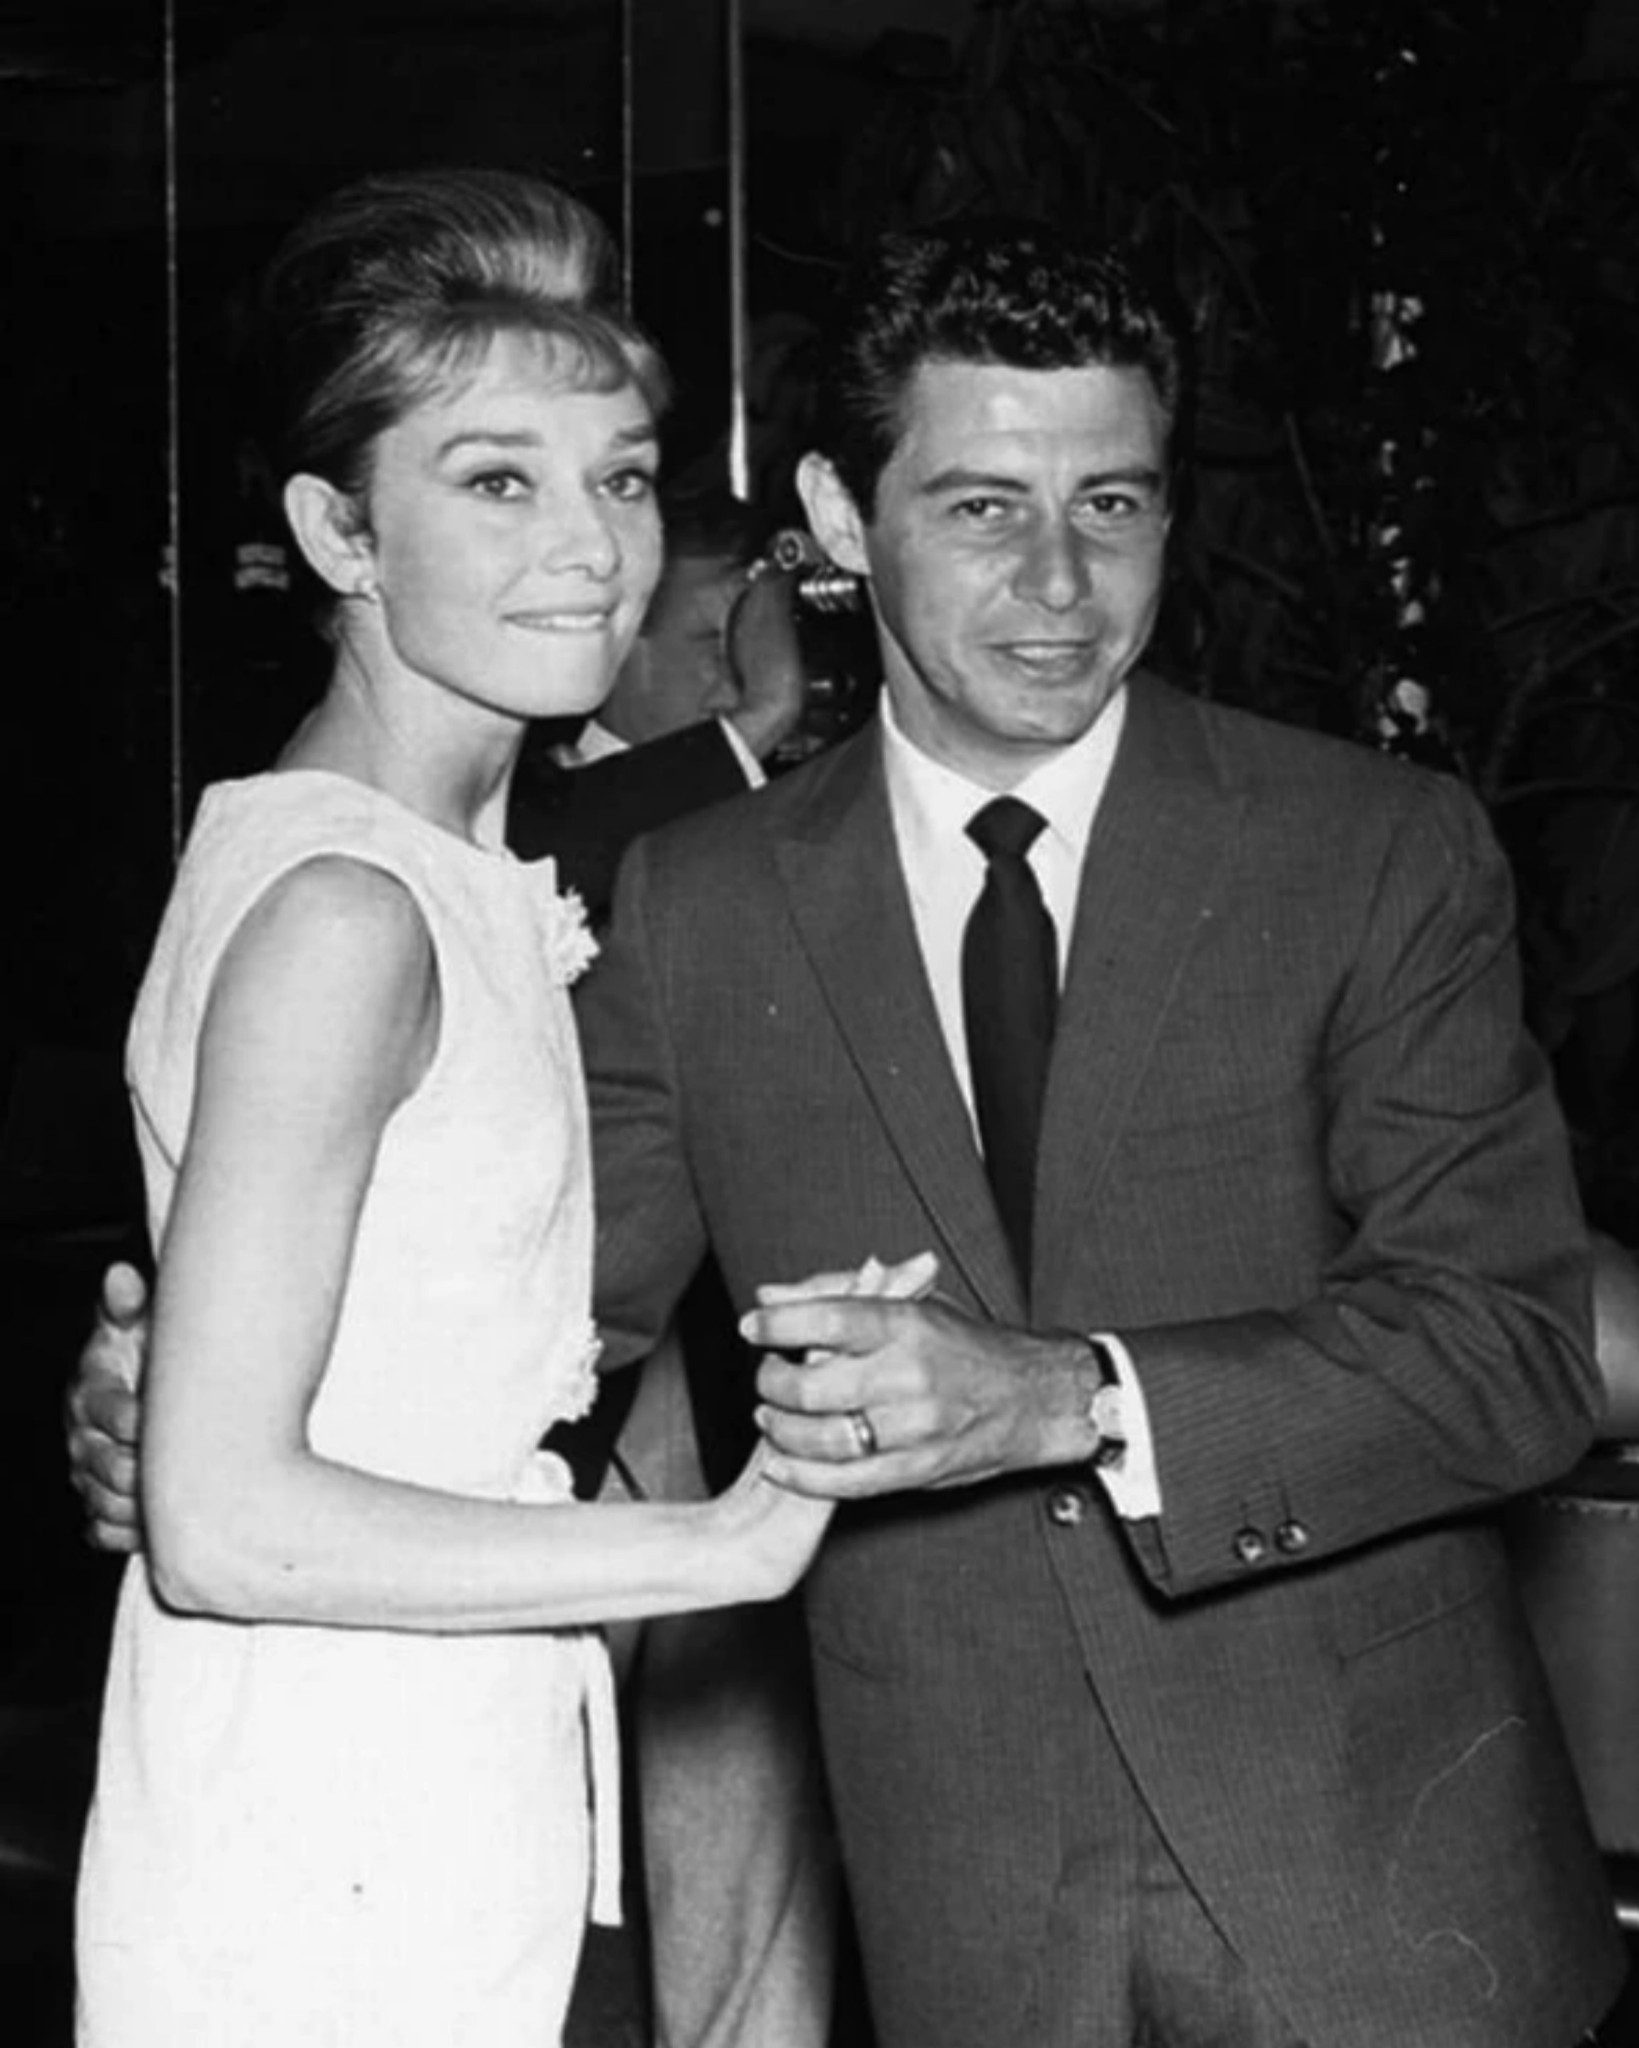 Audrey Hepburn and Eddie Fisher at Desert Inn, famous nightclub in Las Vegas, 1961.